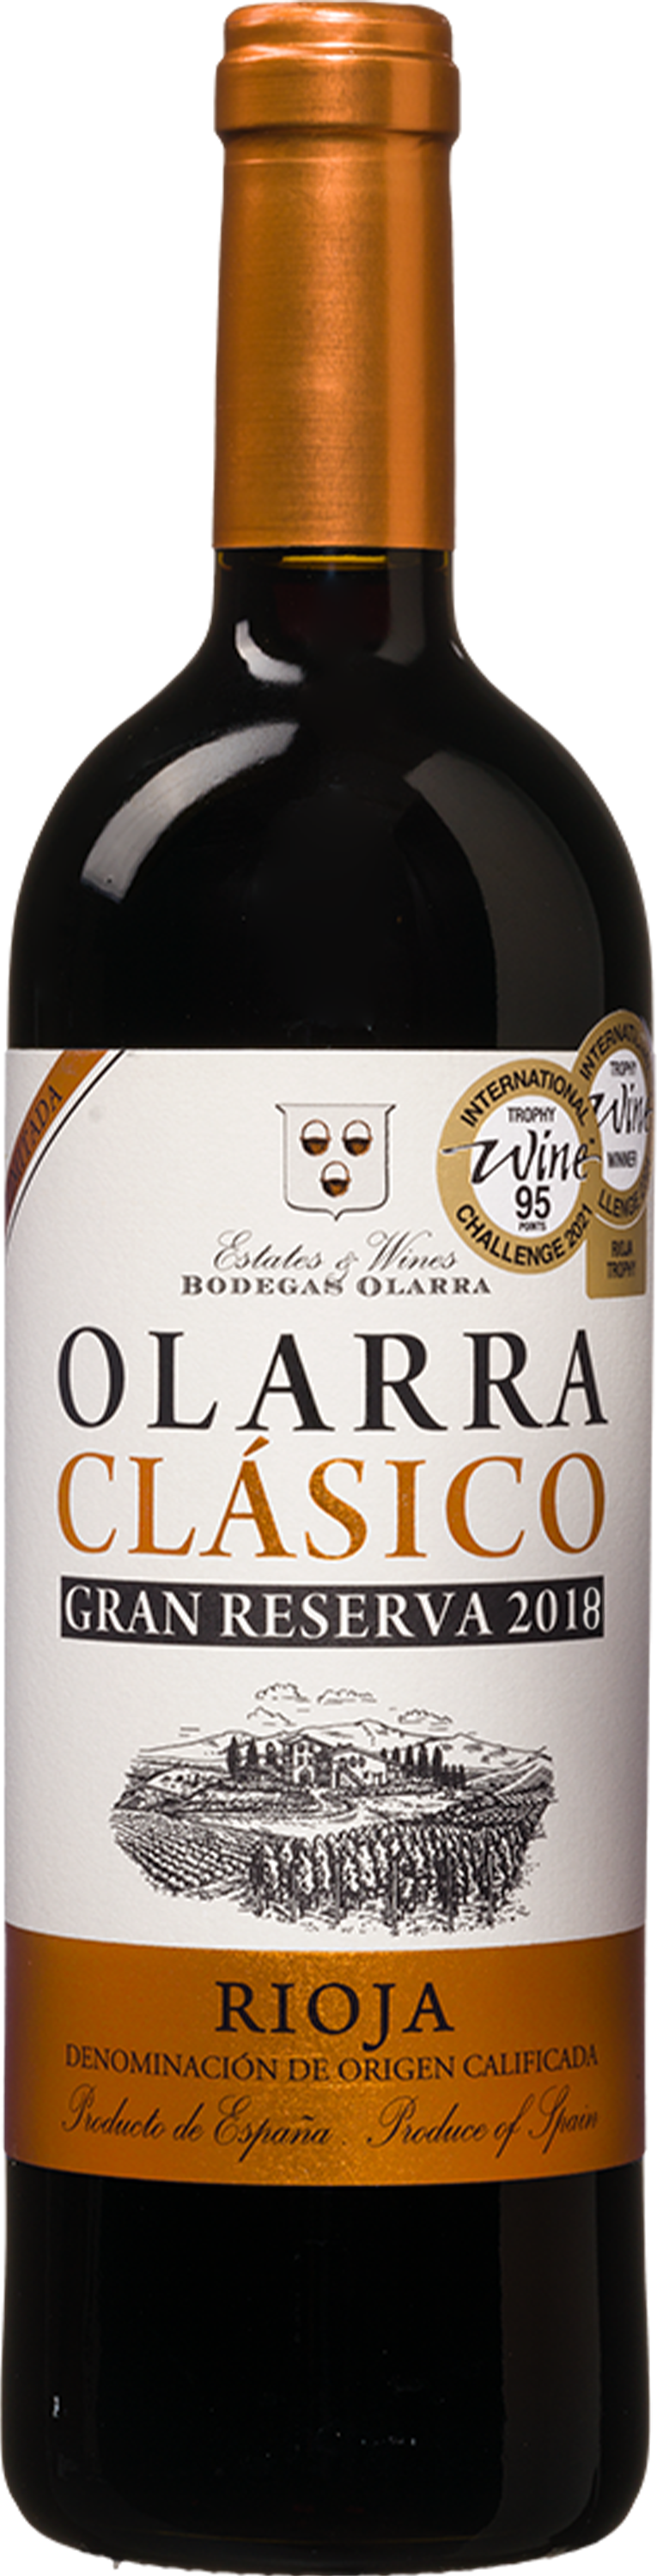 Wijnbeurs Olarra Clasico Rioja Gran Reserva